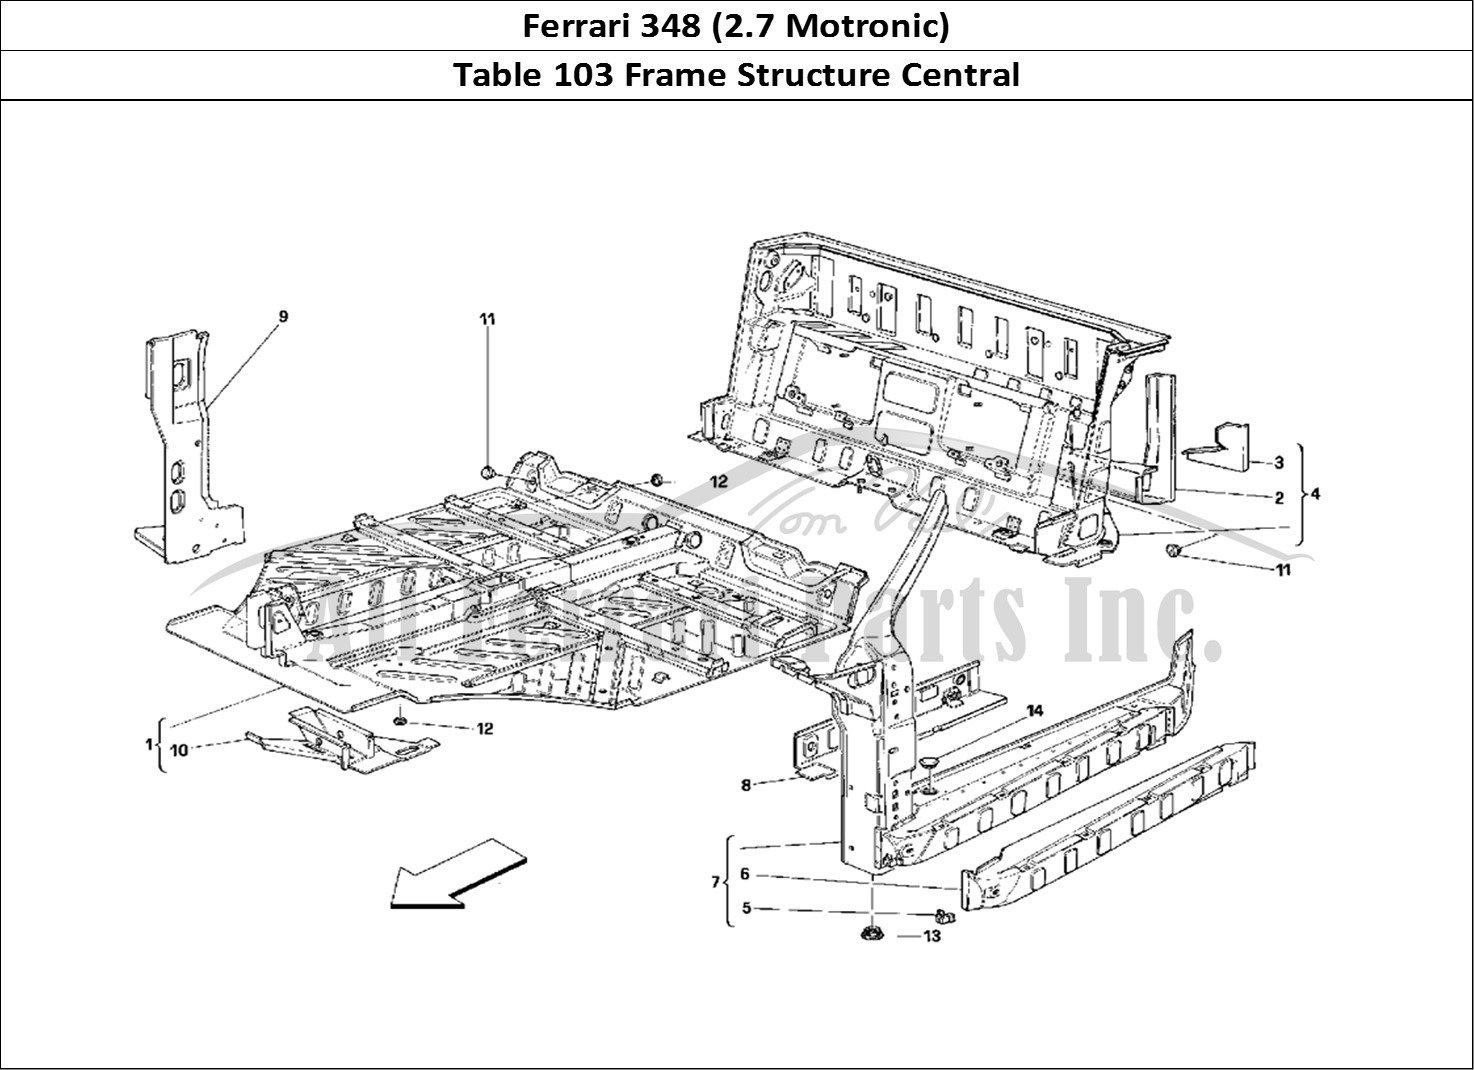 Ferrari Parts Ferrari 348 (2.7 Motronic) Page 103 Central Part Structures